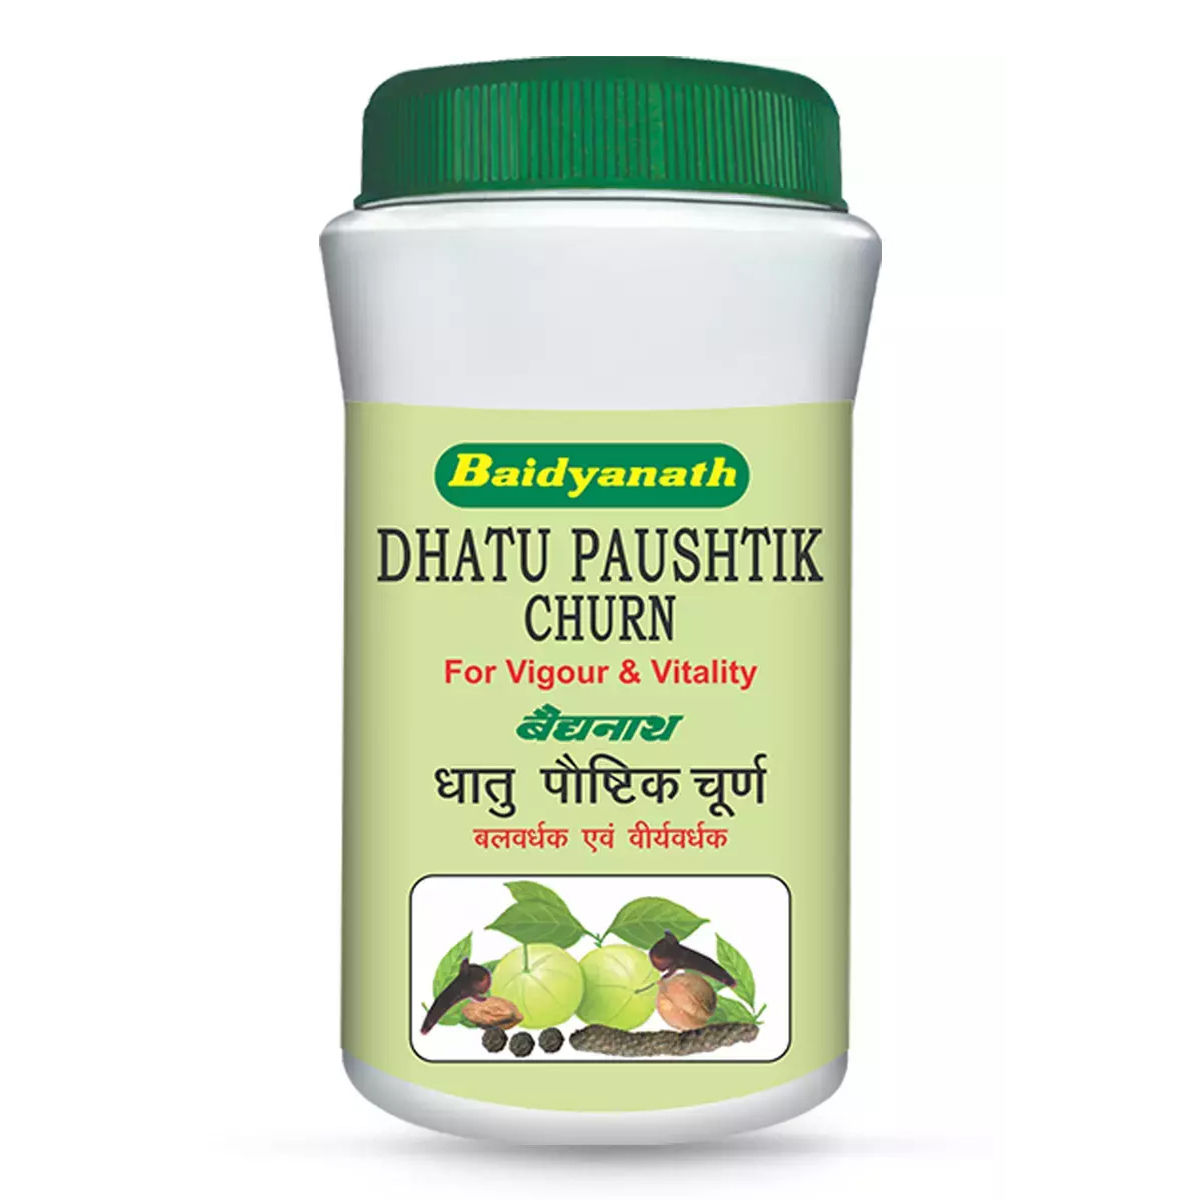 Baidyanath Dhatu Paushtik Churn, 100 gm, Pack of 1 